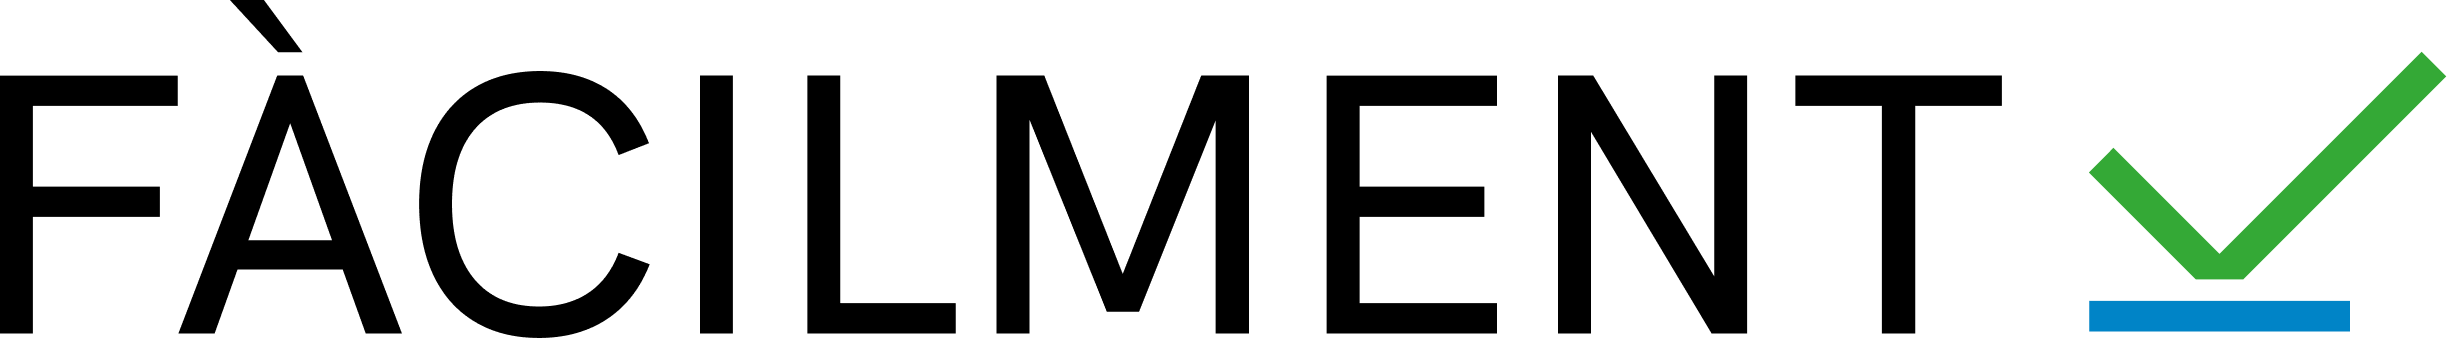 Logotip FàcilMent